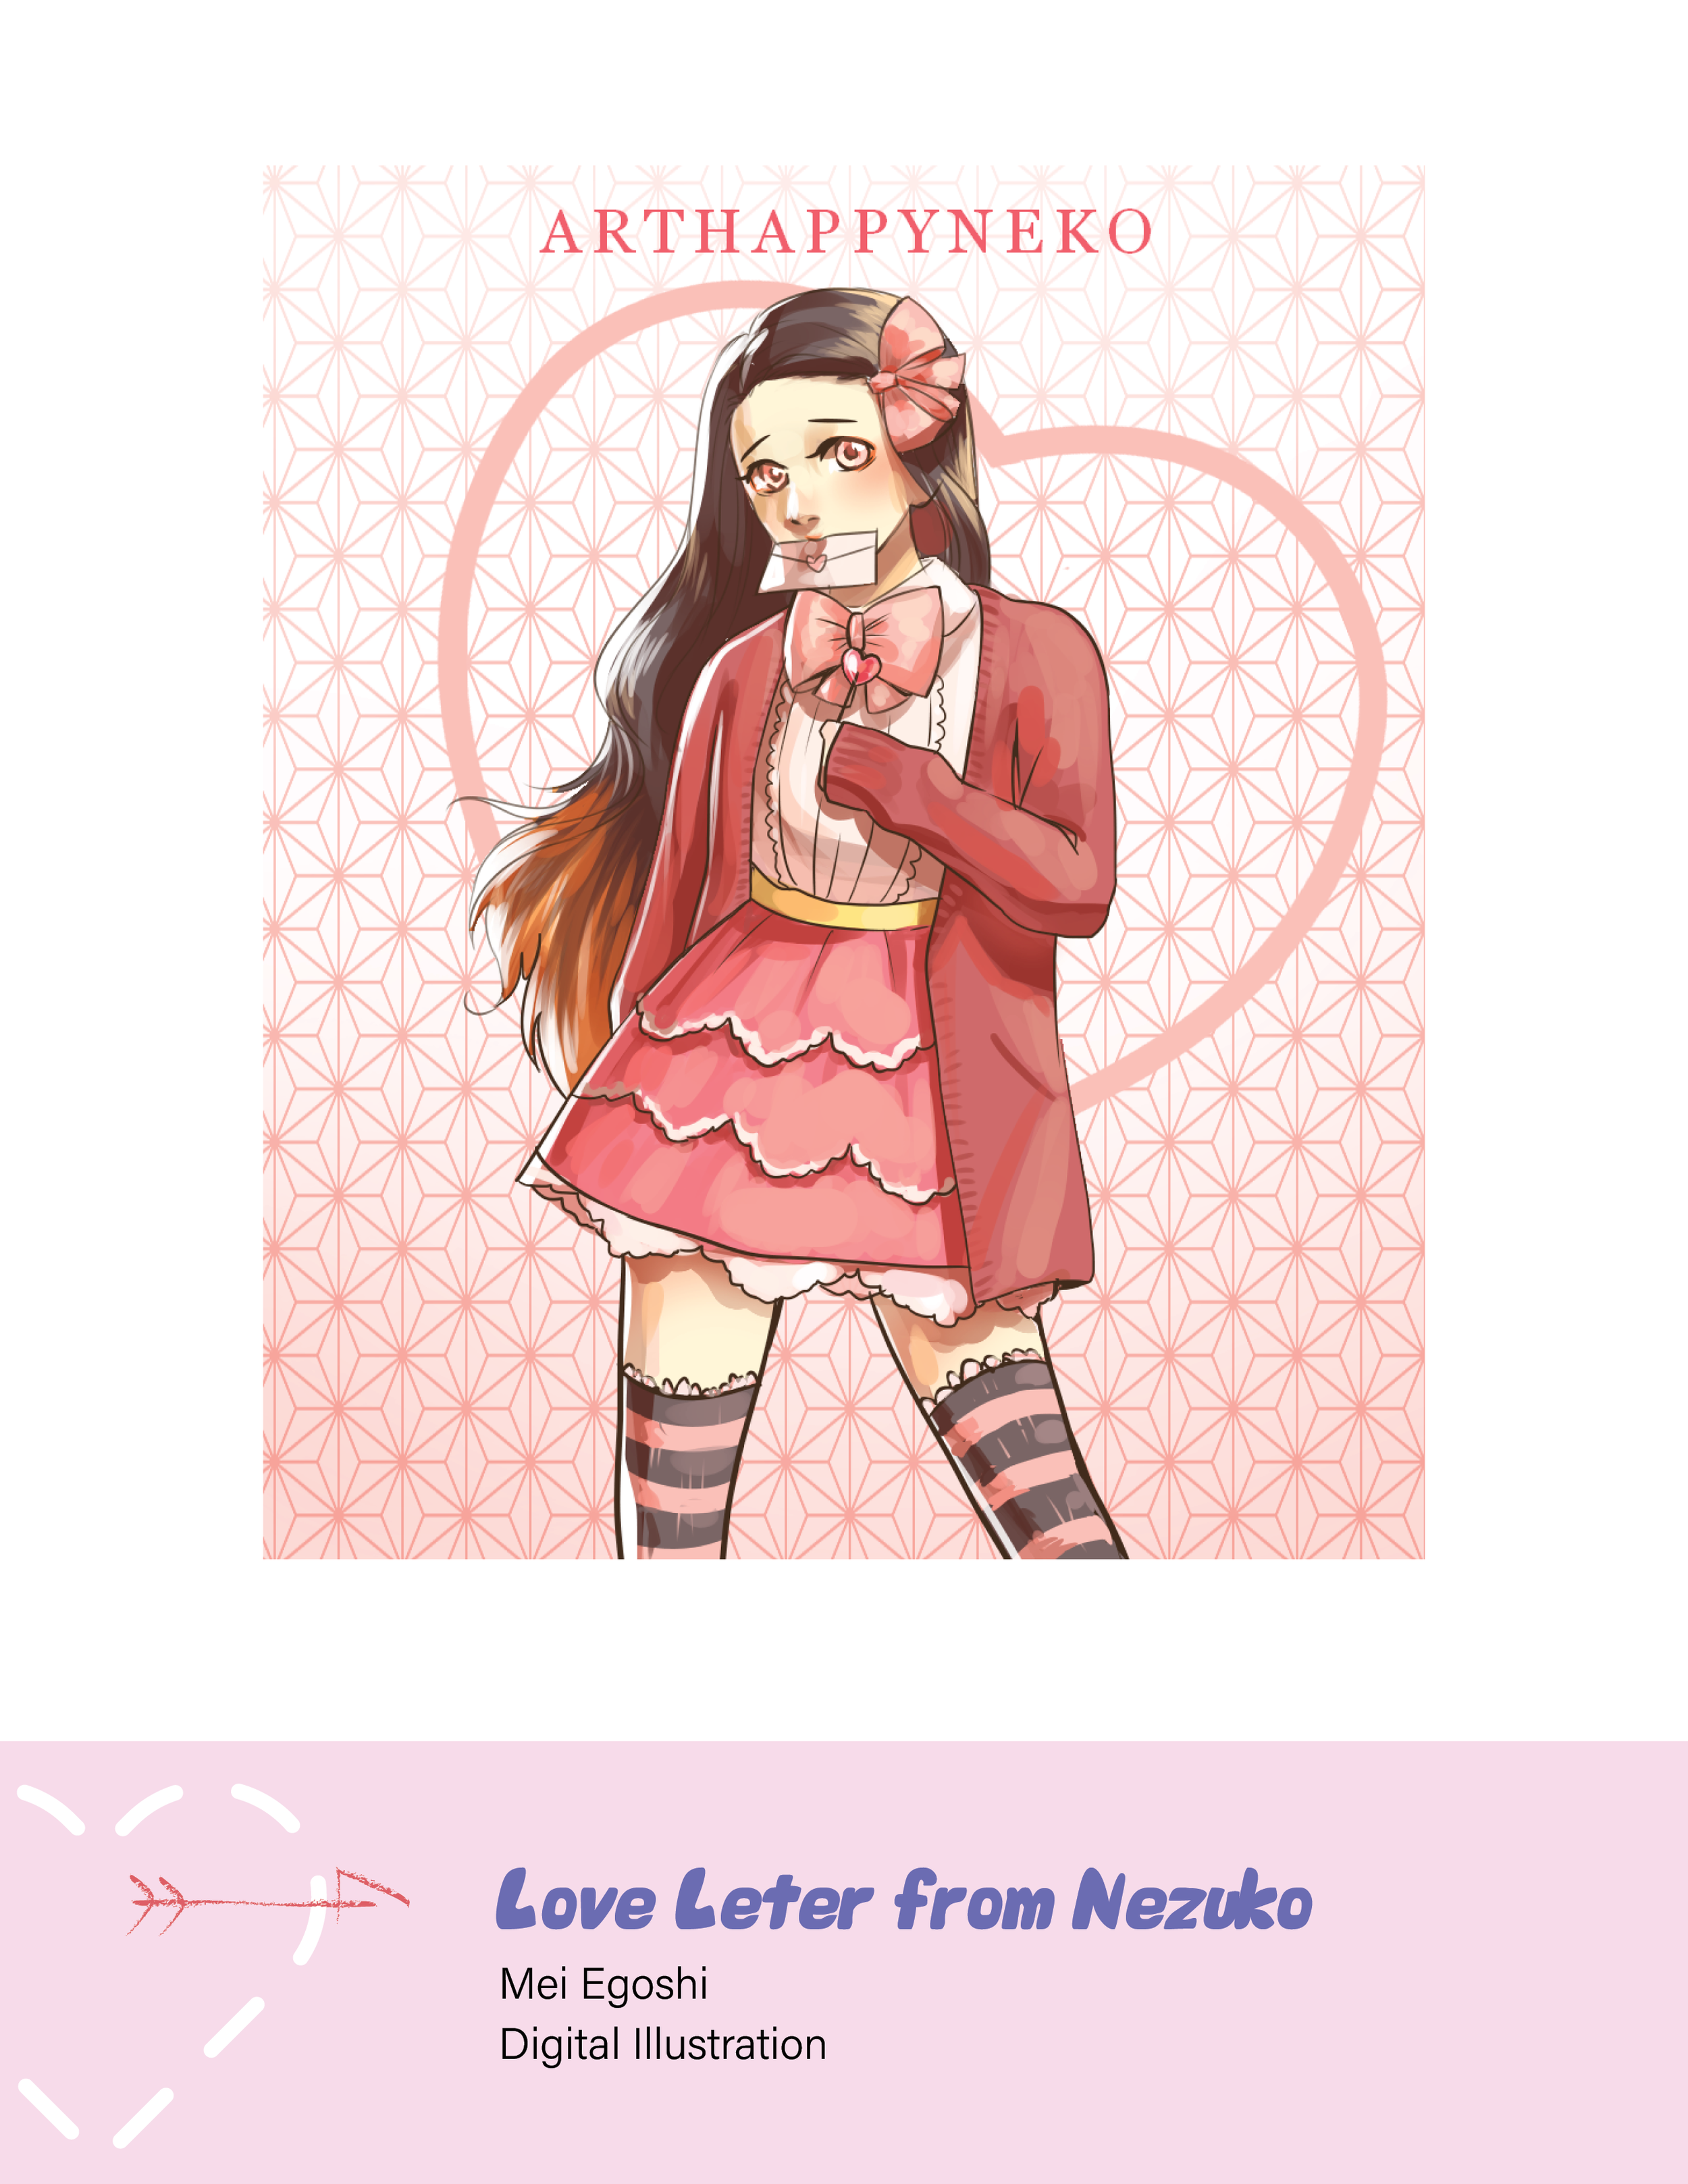 "Love Letter from Nezuko" by Mei Egoshi